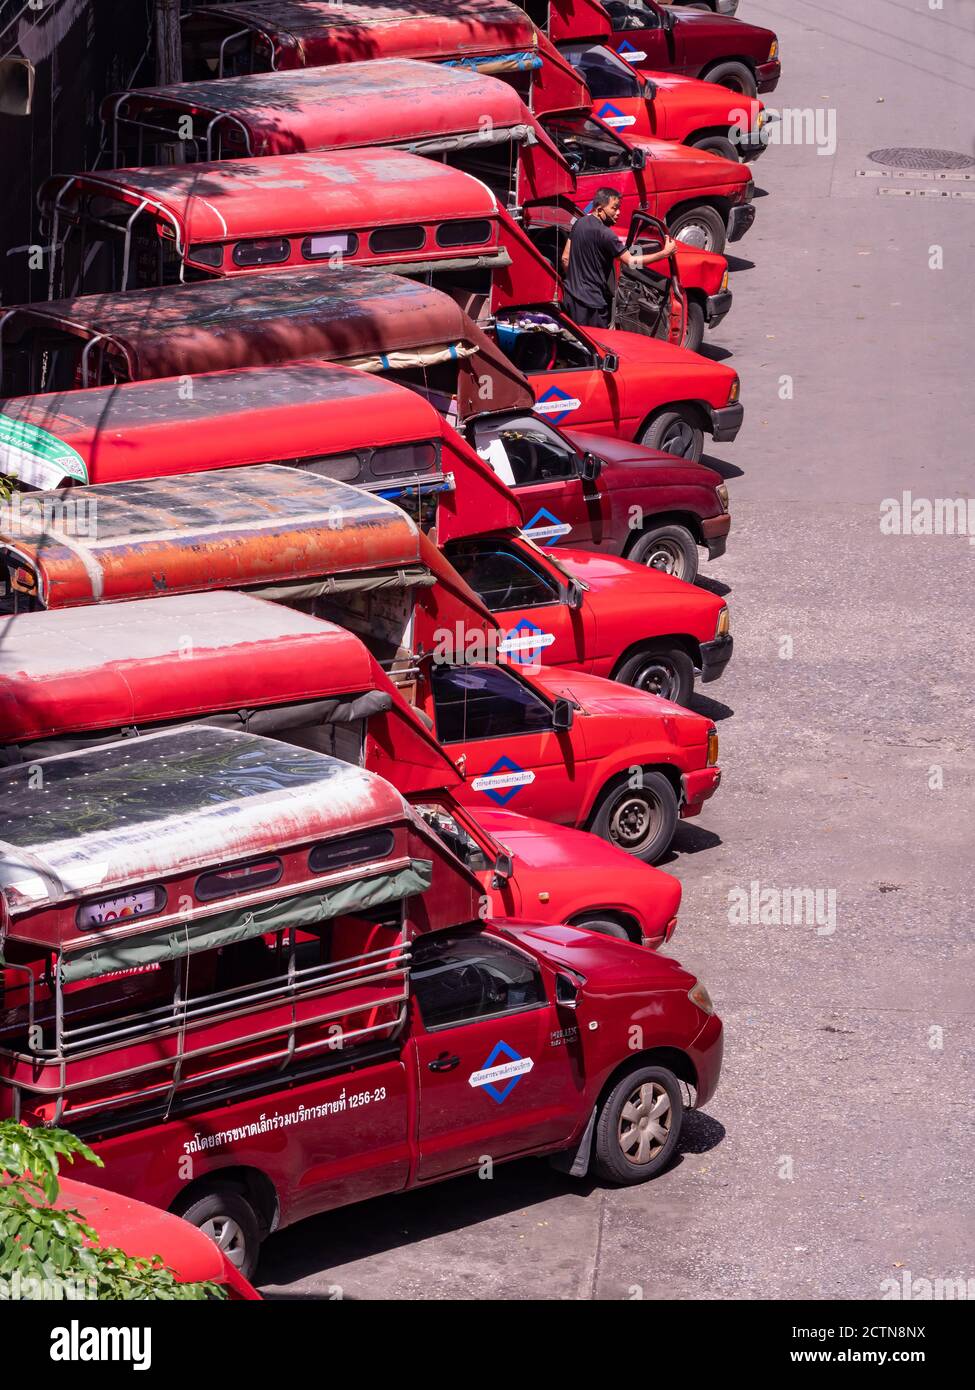 Baht Busse, Pickup-Trucks mit zwei Bänken im Rücken, warten auf die Abfahrt in Saphan Taksin in Bangkok, Thailand. Der Name in thailändischer Sprache für die Stockfoto